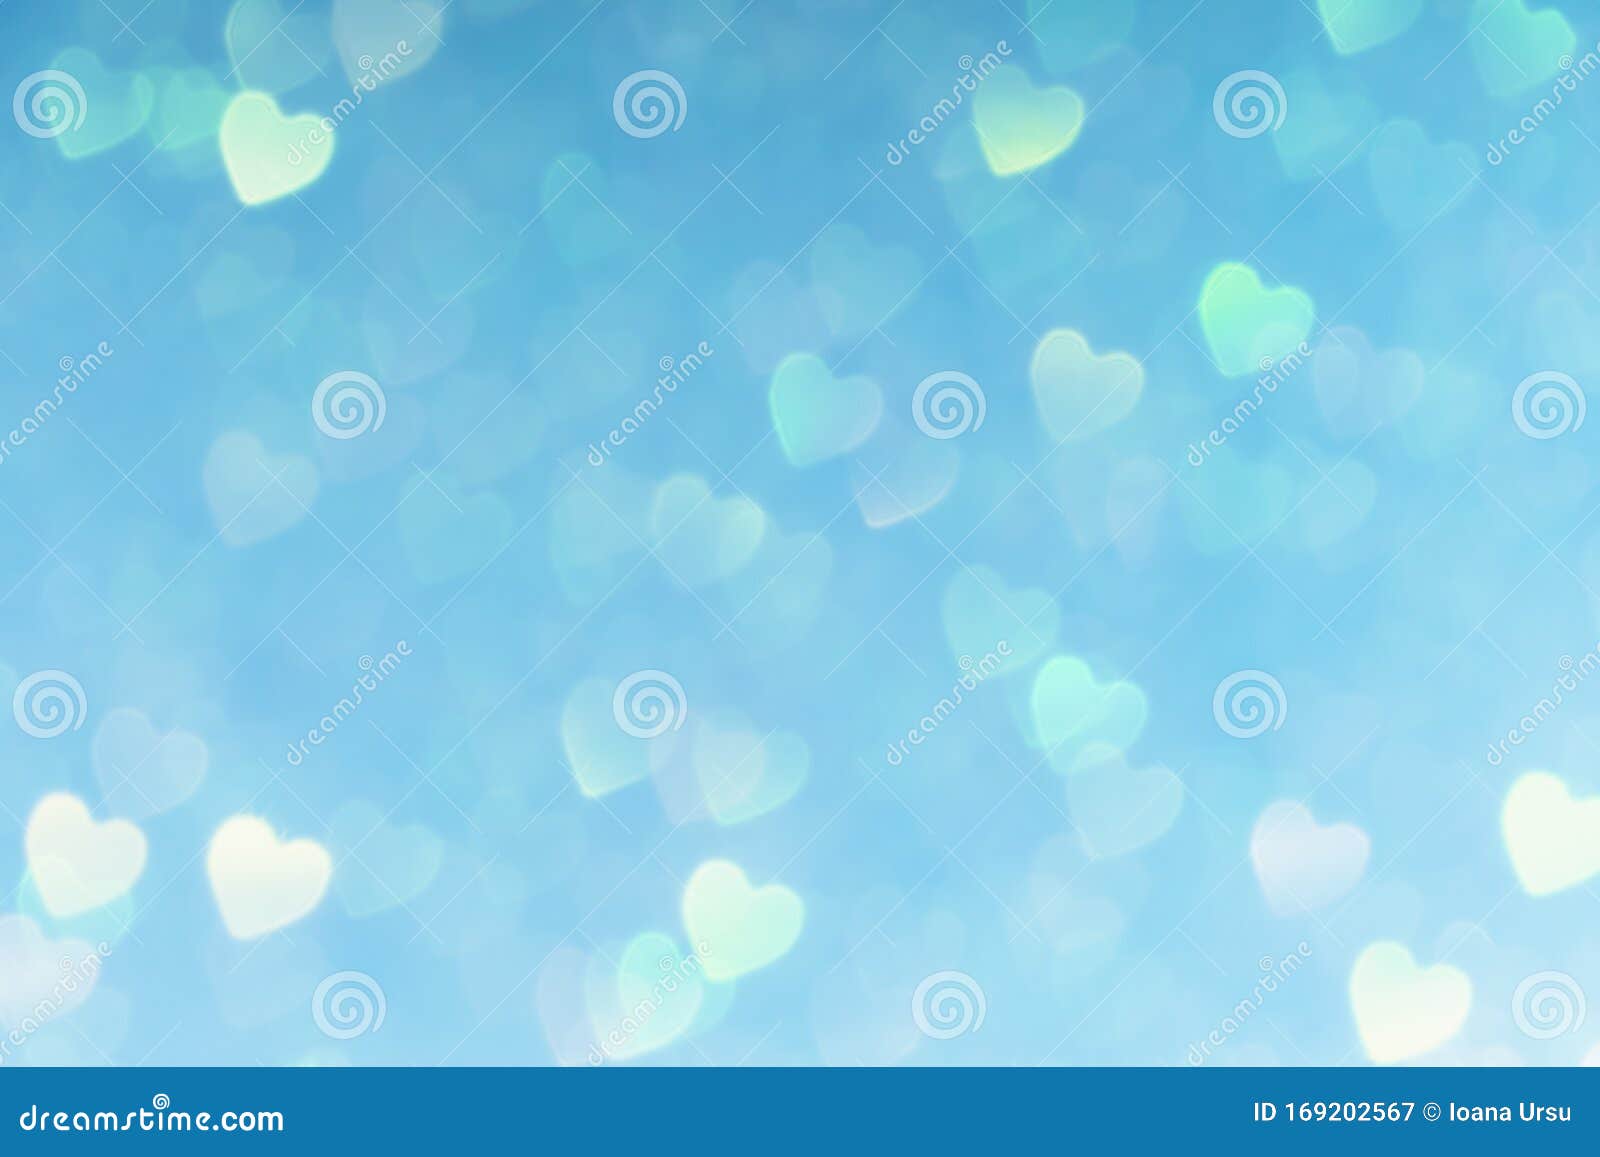 Sự kết hợp giữa màu xanh và tình yêu sẽ làm cho bạn bất ngờ và thích thú. Hình nền Valentine màu xanh này sẽ mang lại cho bạn một không gian đầy nghệ thuật, tươi mới và tình tứ. Hãy để bức ảnh này thổi bùng lên tình cảm trong ngày lễ tình nhân của bạn.